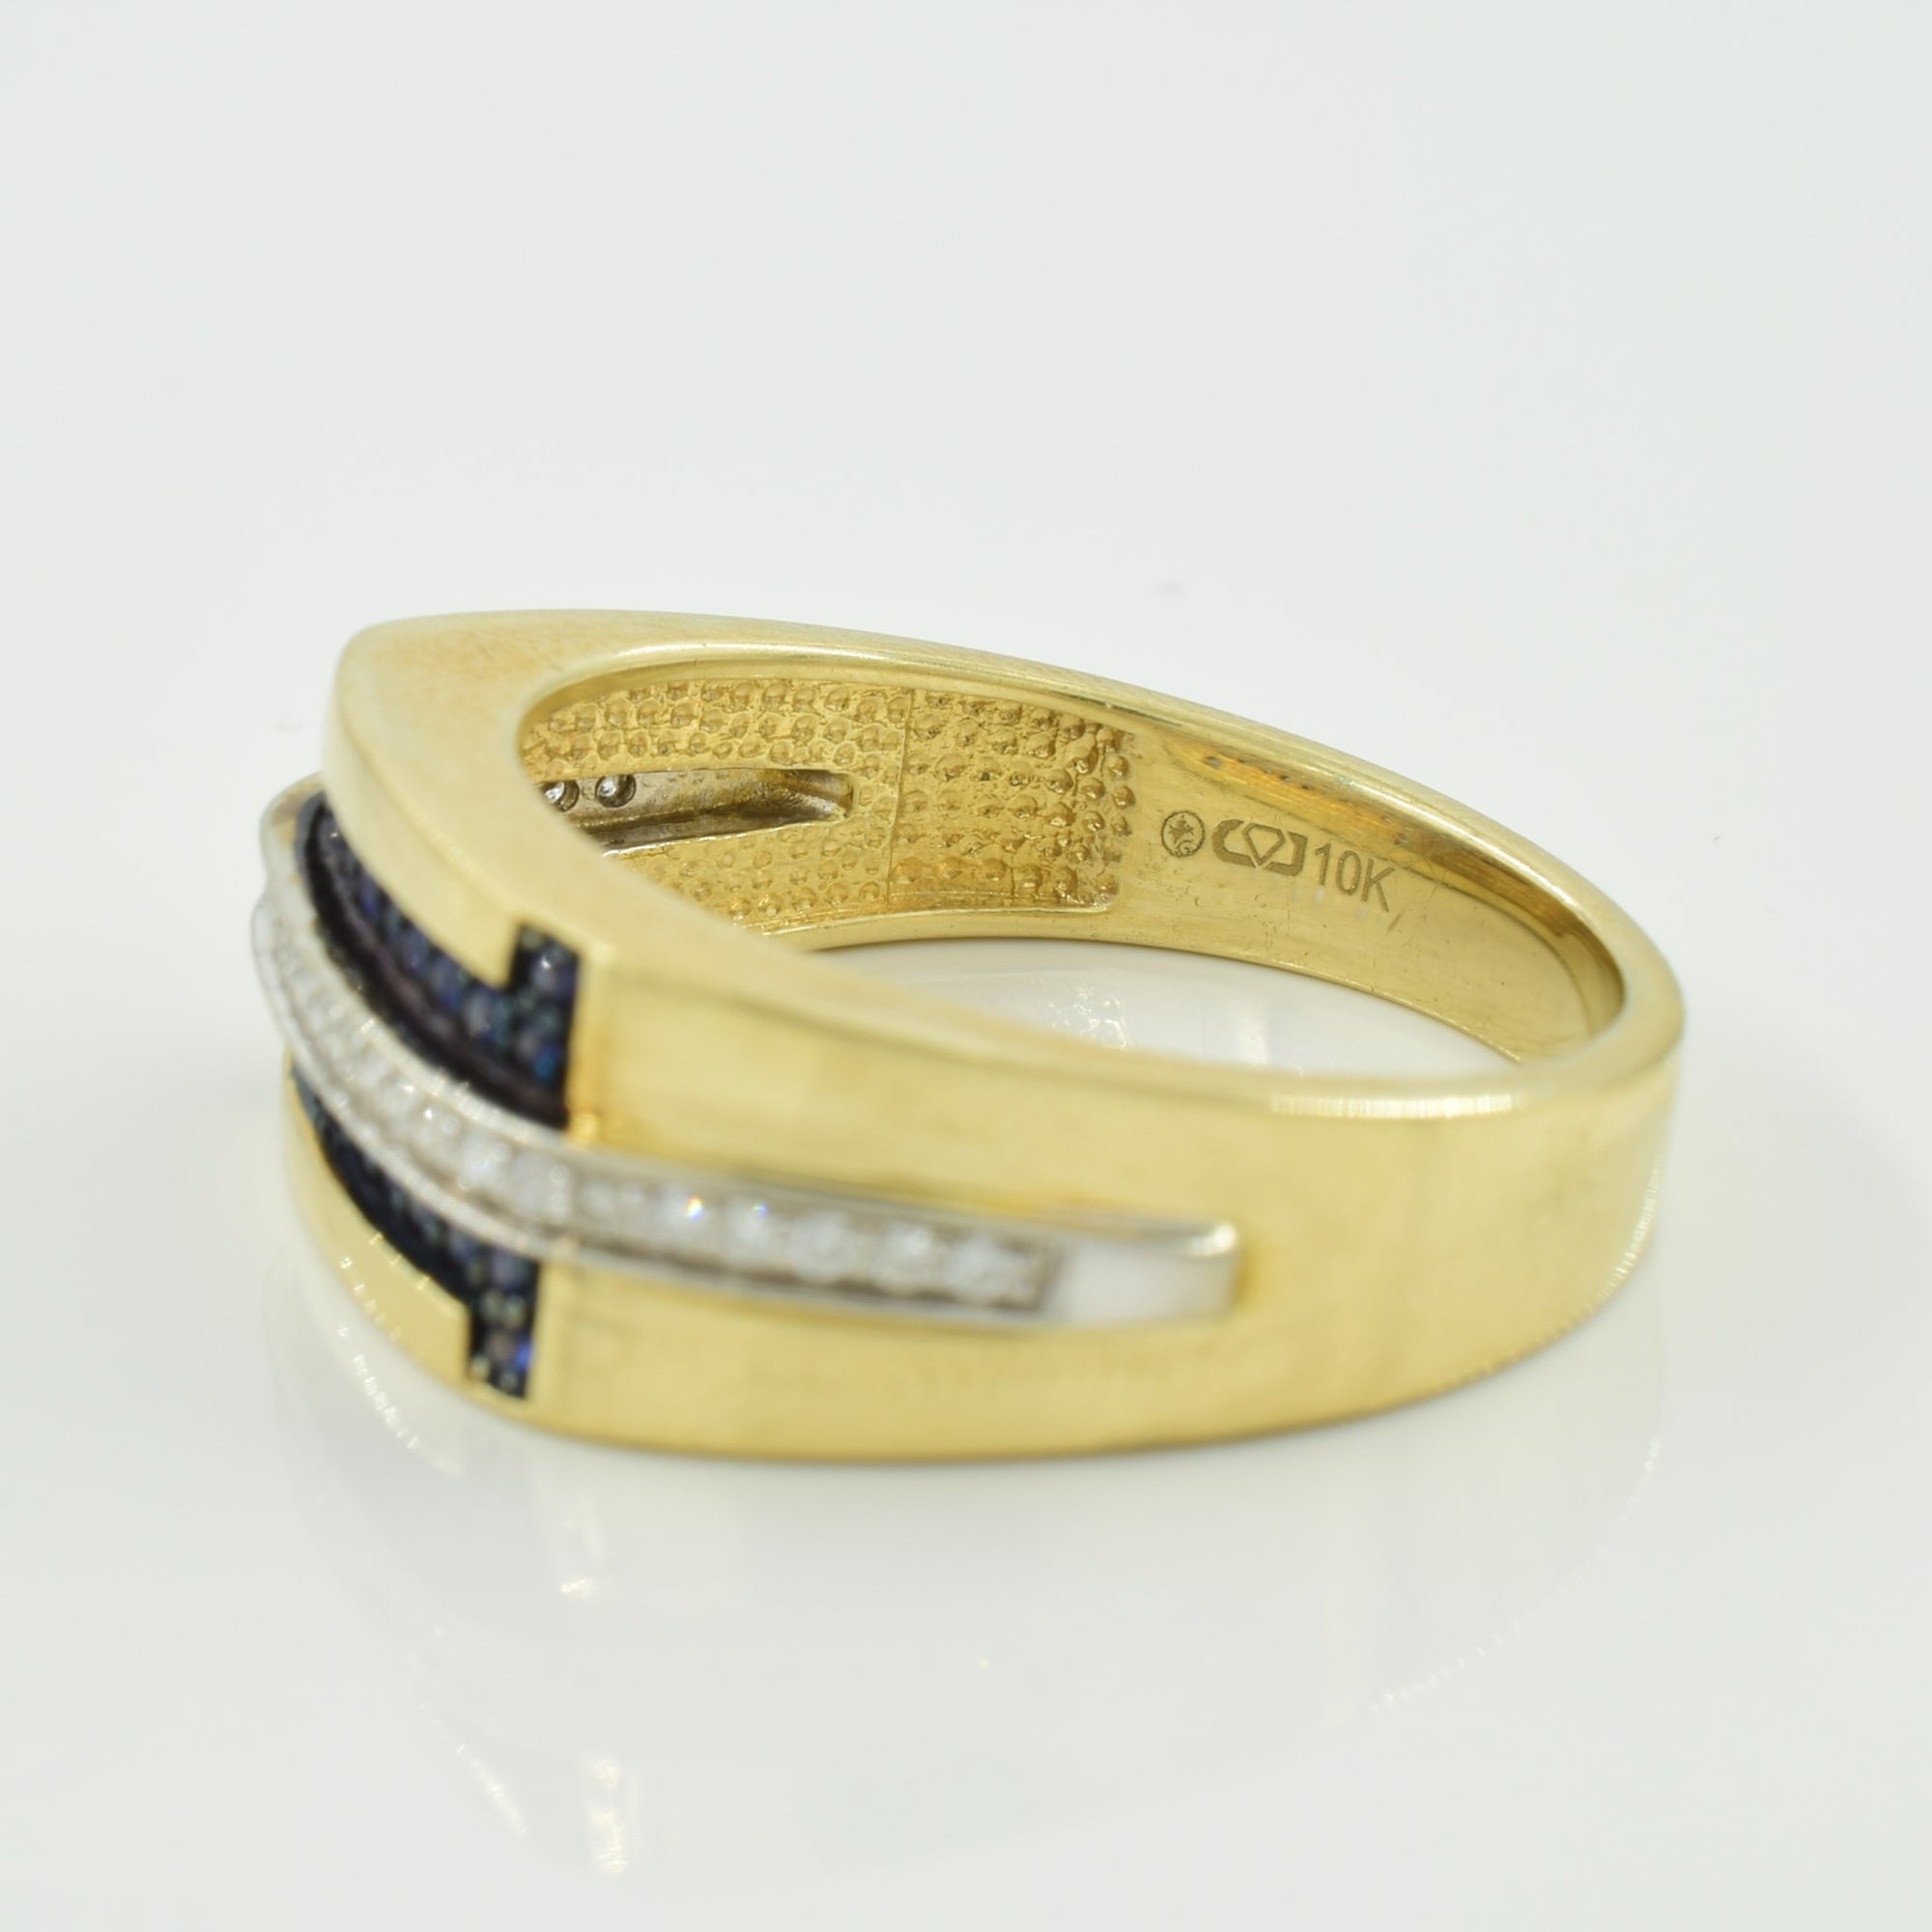 Blue Sapphire & Diamond Ring | 0.20ctw, 0.15ctw | SZ 10.75 |